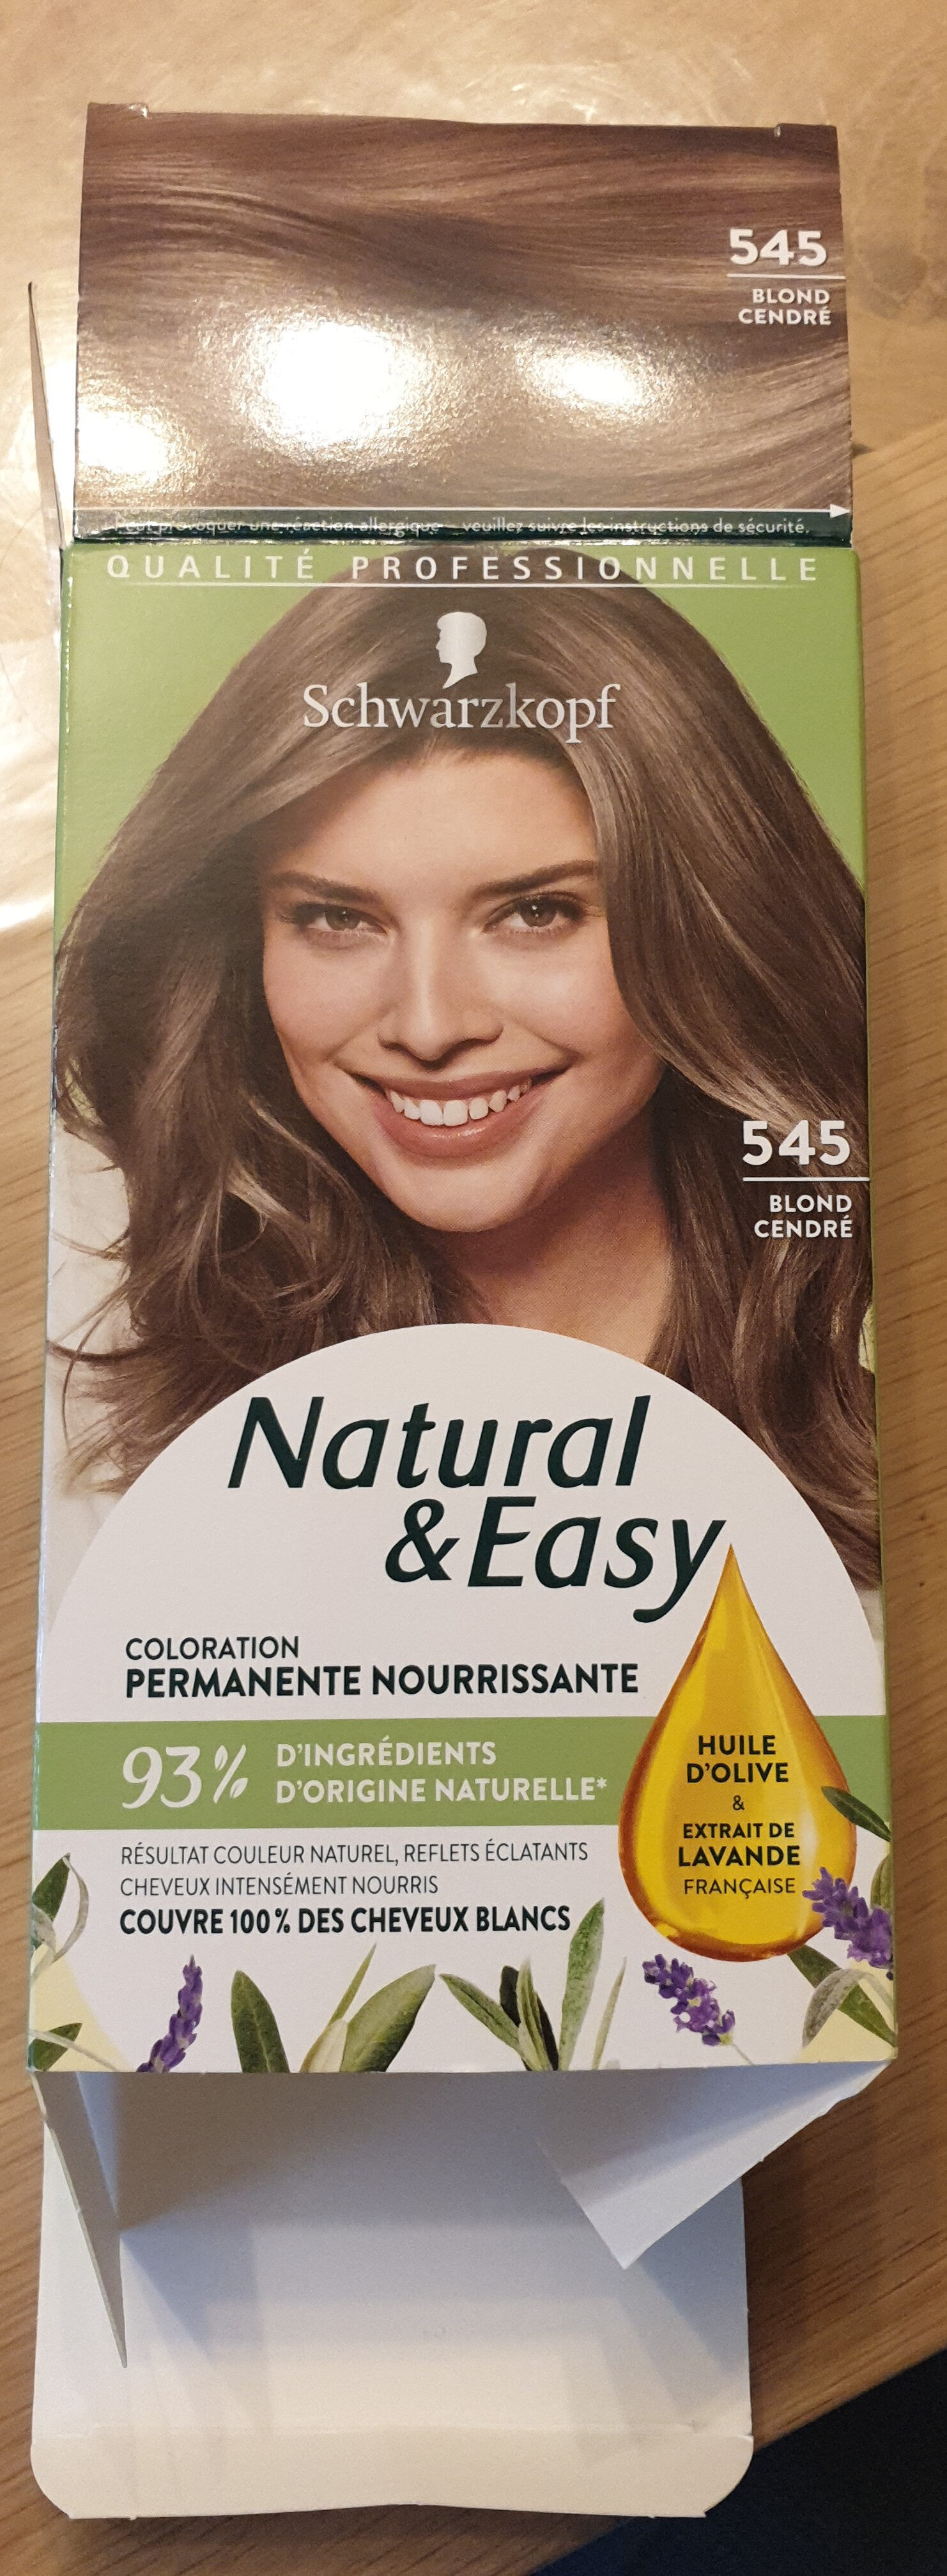 Natural & Easy 545 blond cendré - Продукт - fr